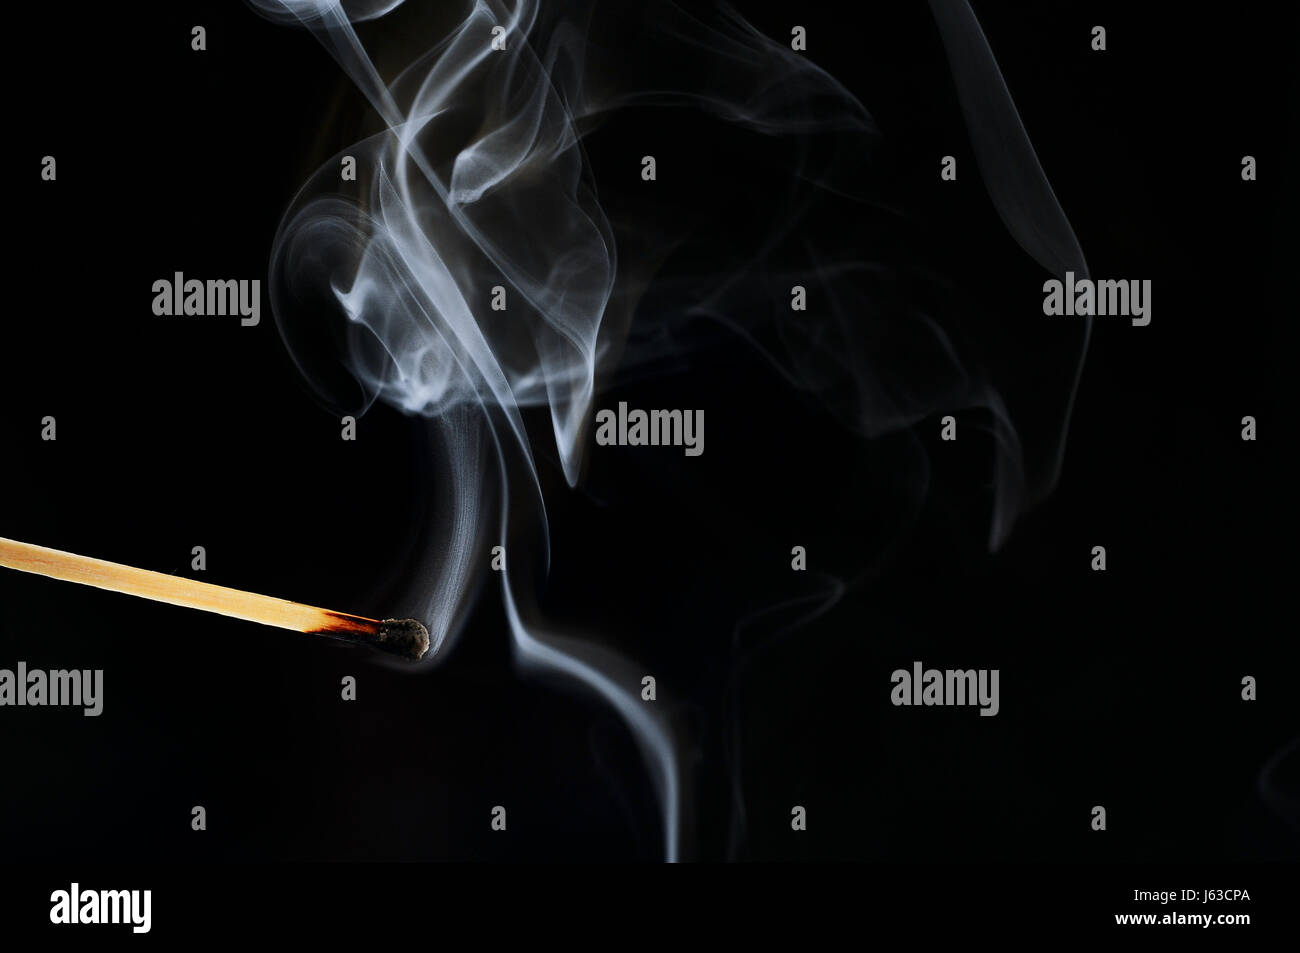 Fumée fumer fume fume feu de bois match jeu ignite kindle incendie Banque D'Images